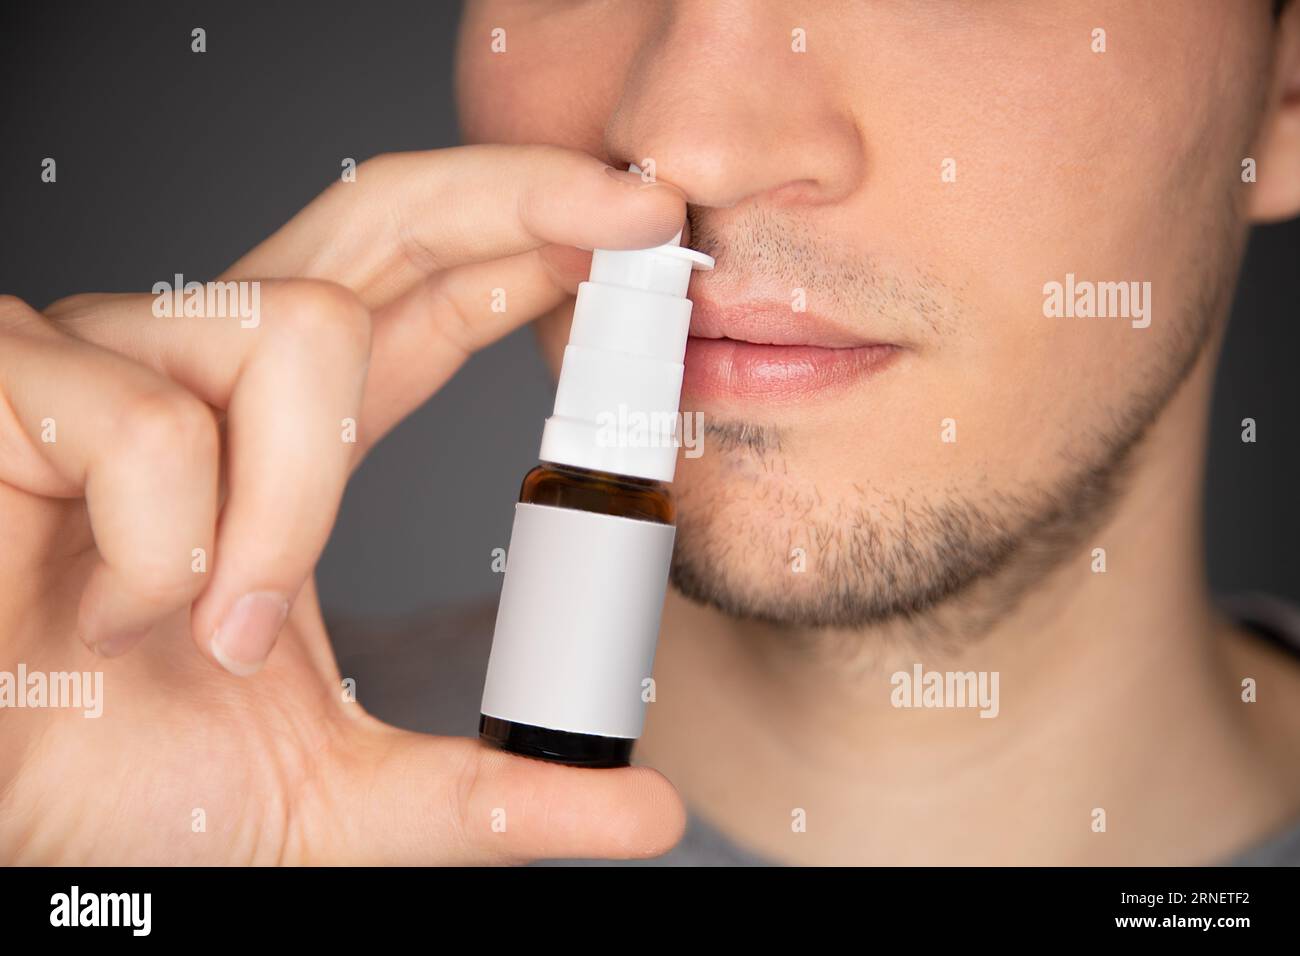 le jeune homme utilise un spray nasal et applique le flacon sur son nez tout en pompant le médicament sur son septum pour soulager la congestion, le nez qui démange et coule, et snee Banque D'Images